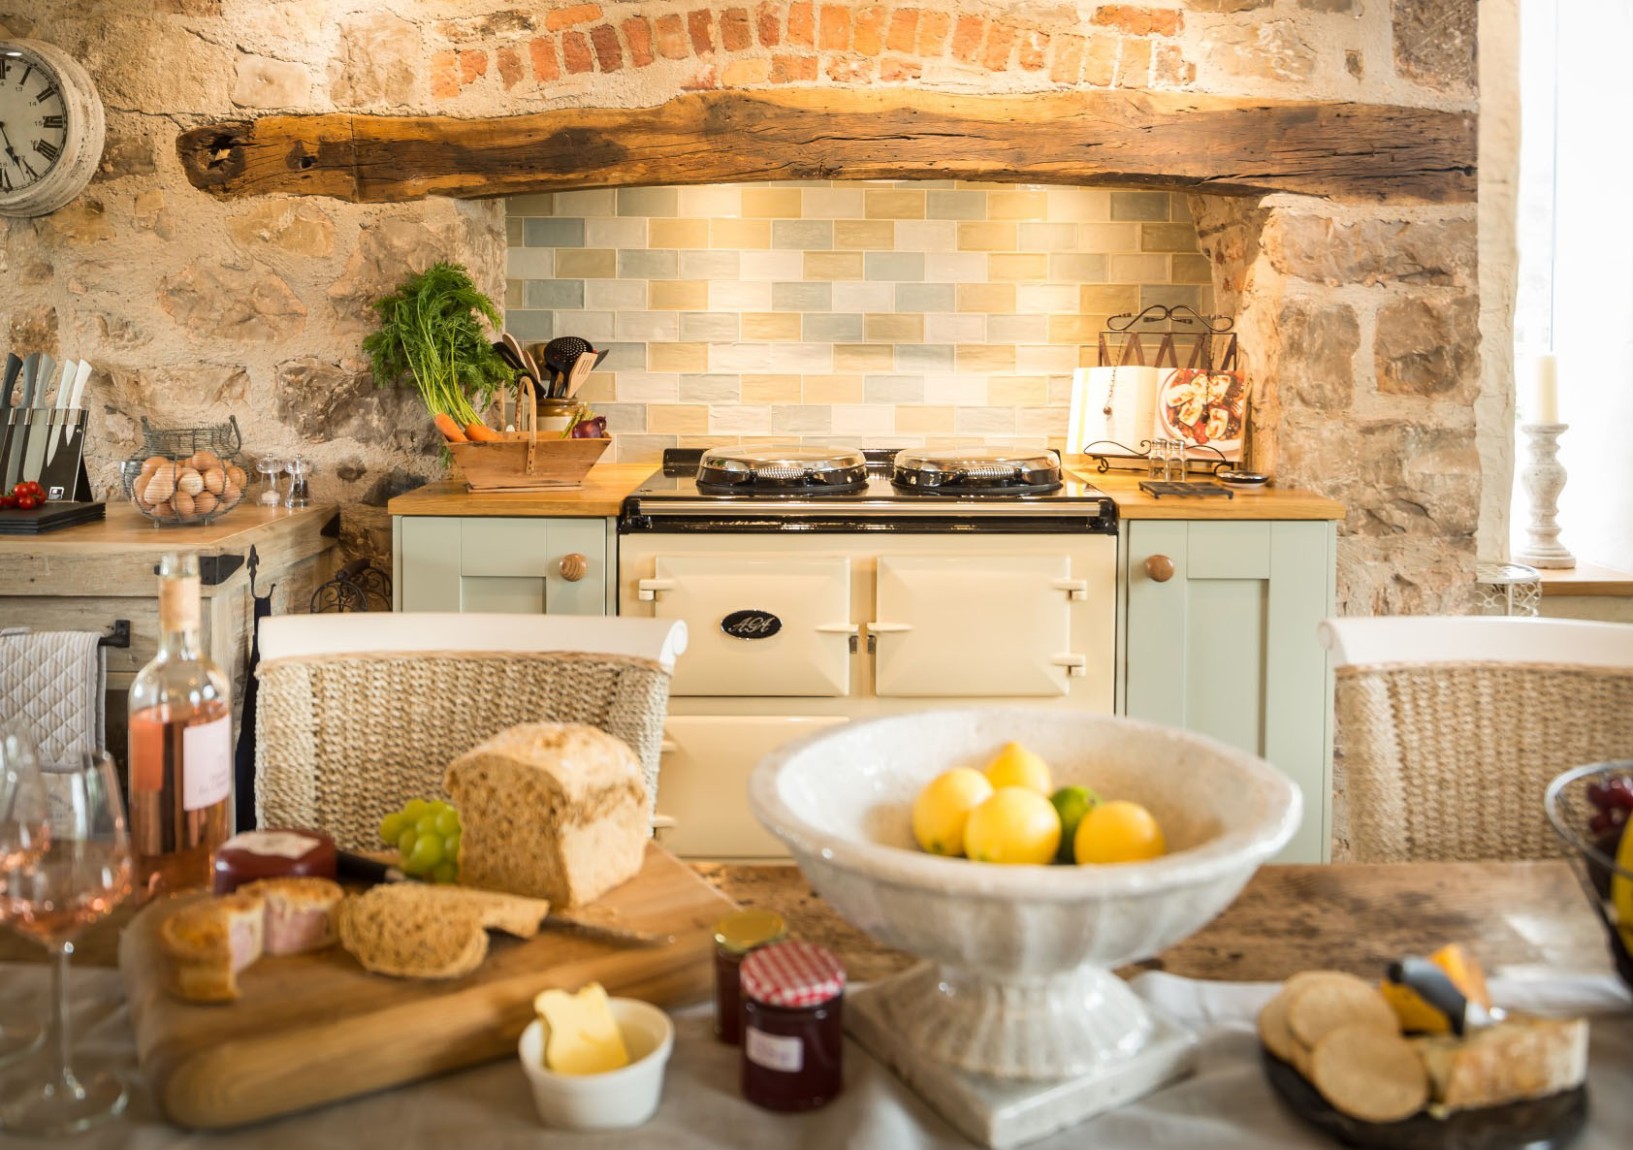 Cottage Kitchen Decor Ideas  Interior Design - what is a cottage kitchen?